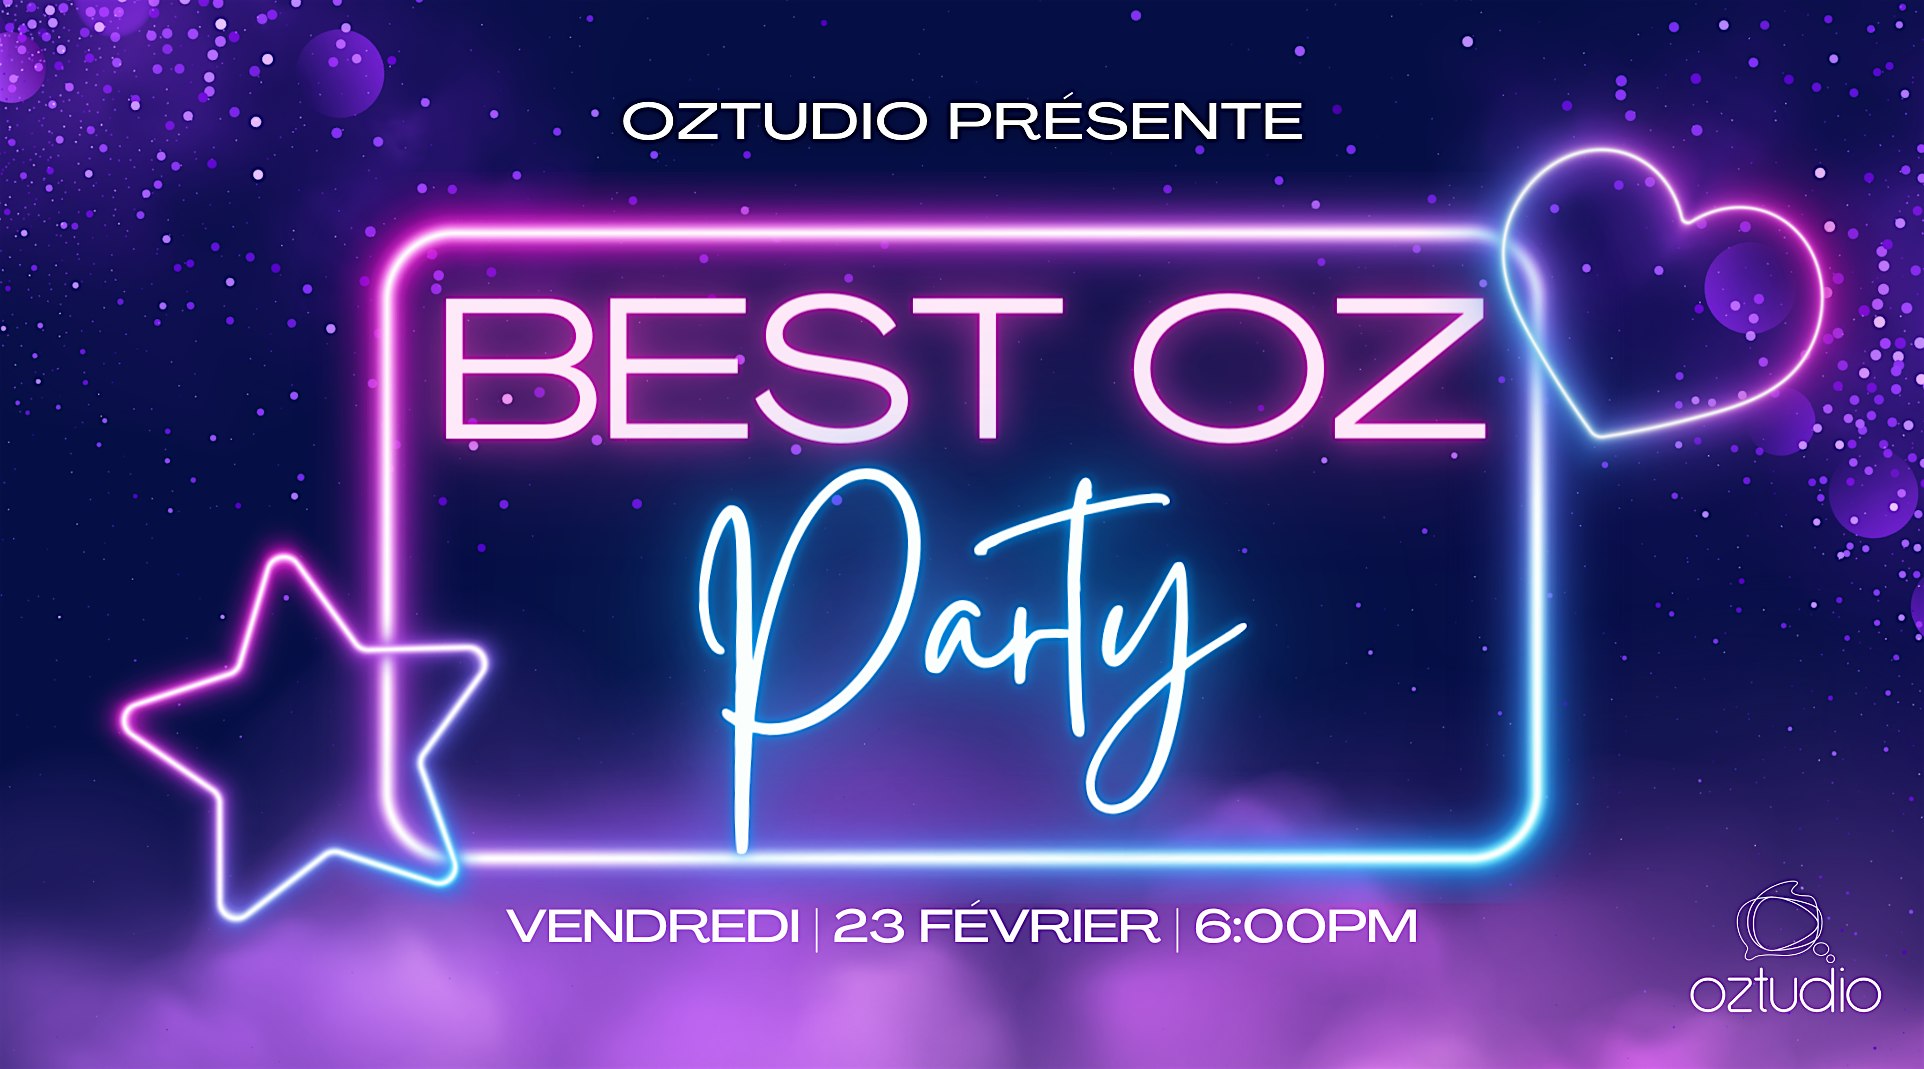 Best OZ party